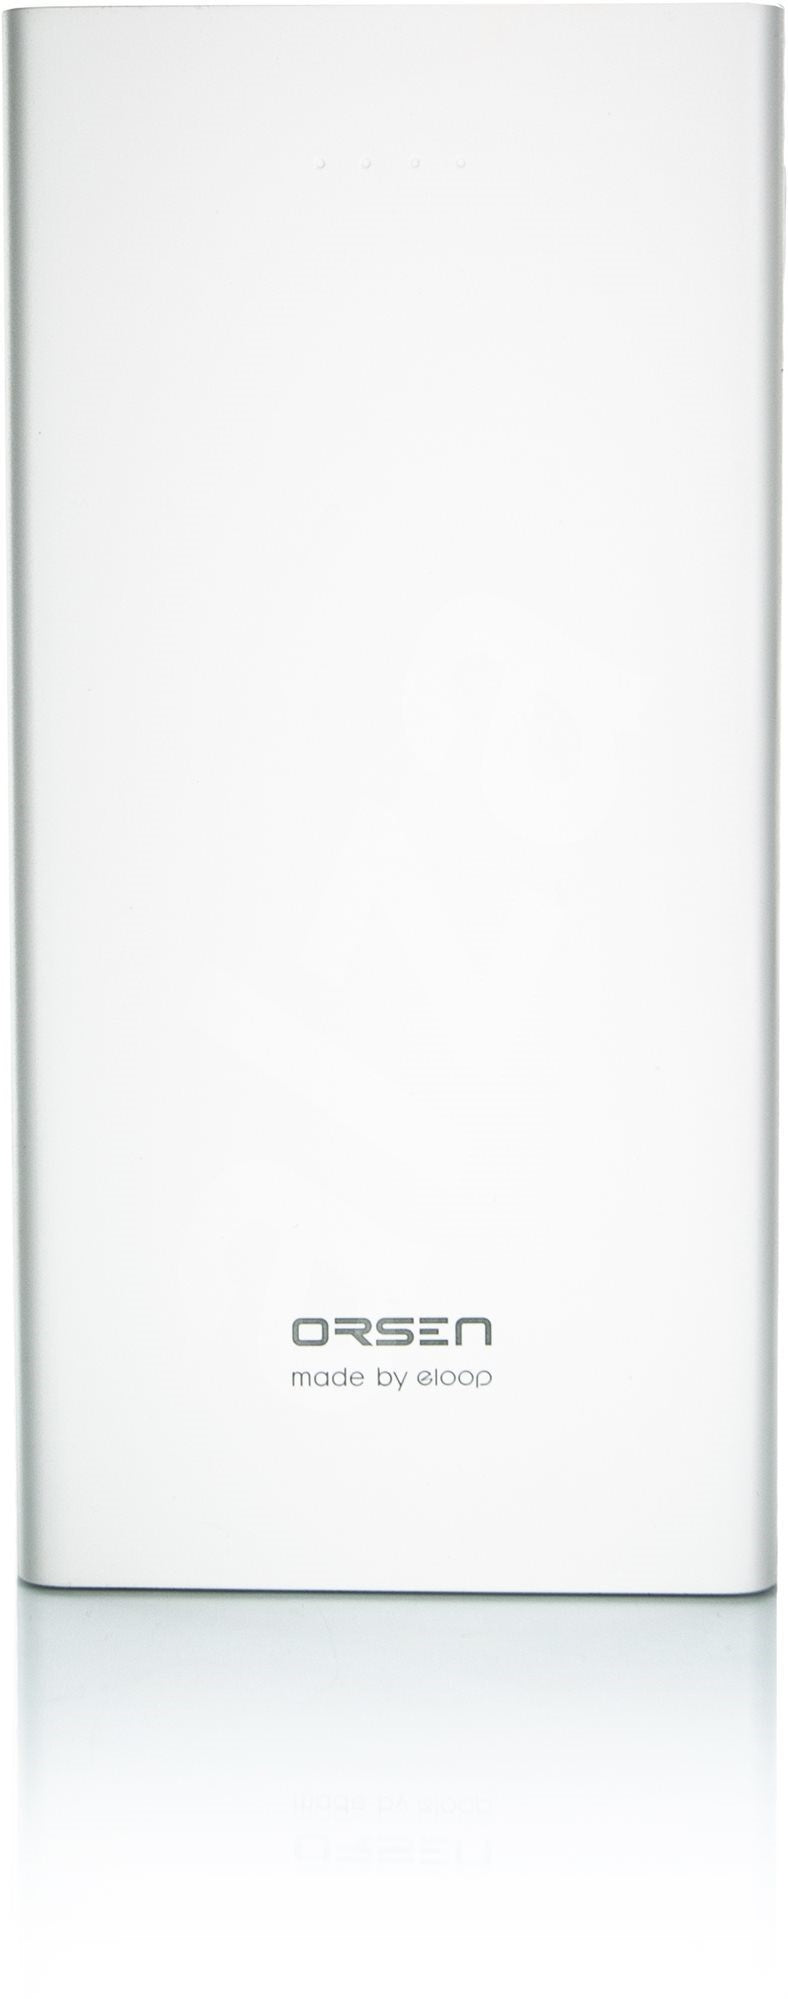 Orsen E41 Power Bank 10000мАч белый